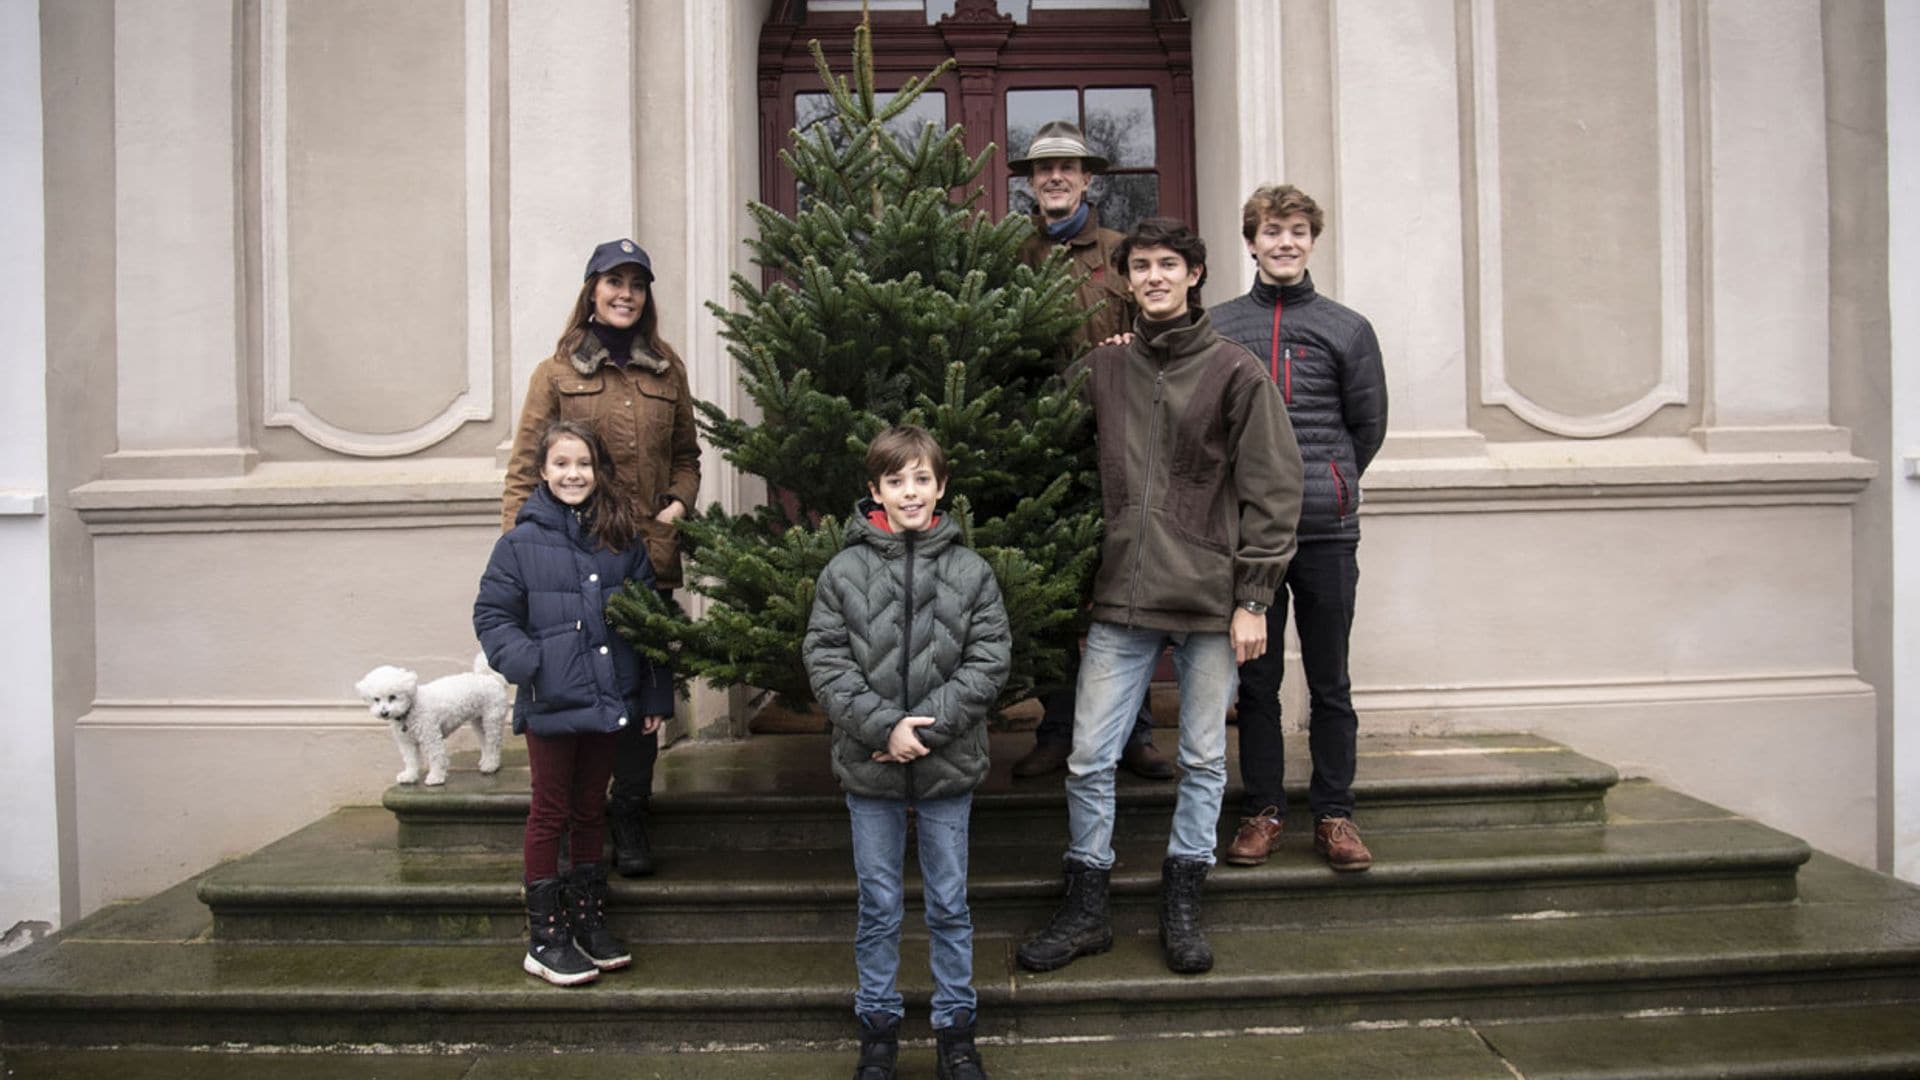 ¡A la caza del abeto perfecto! Joaquín de Dinamarca y su familia, los últimos en tener árbol de Navidad